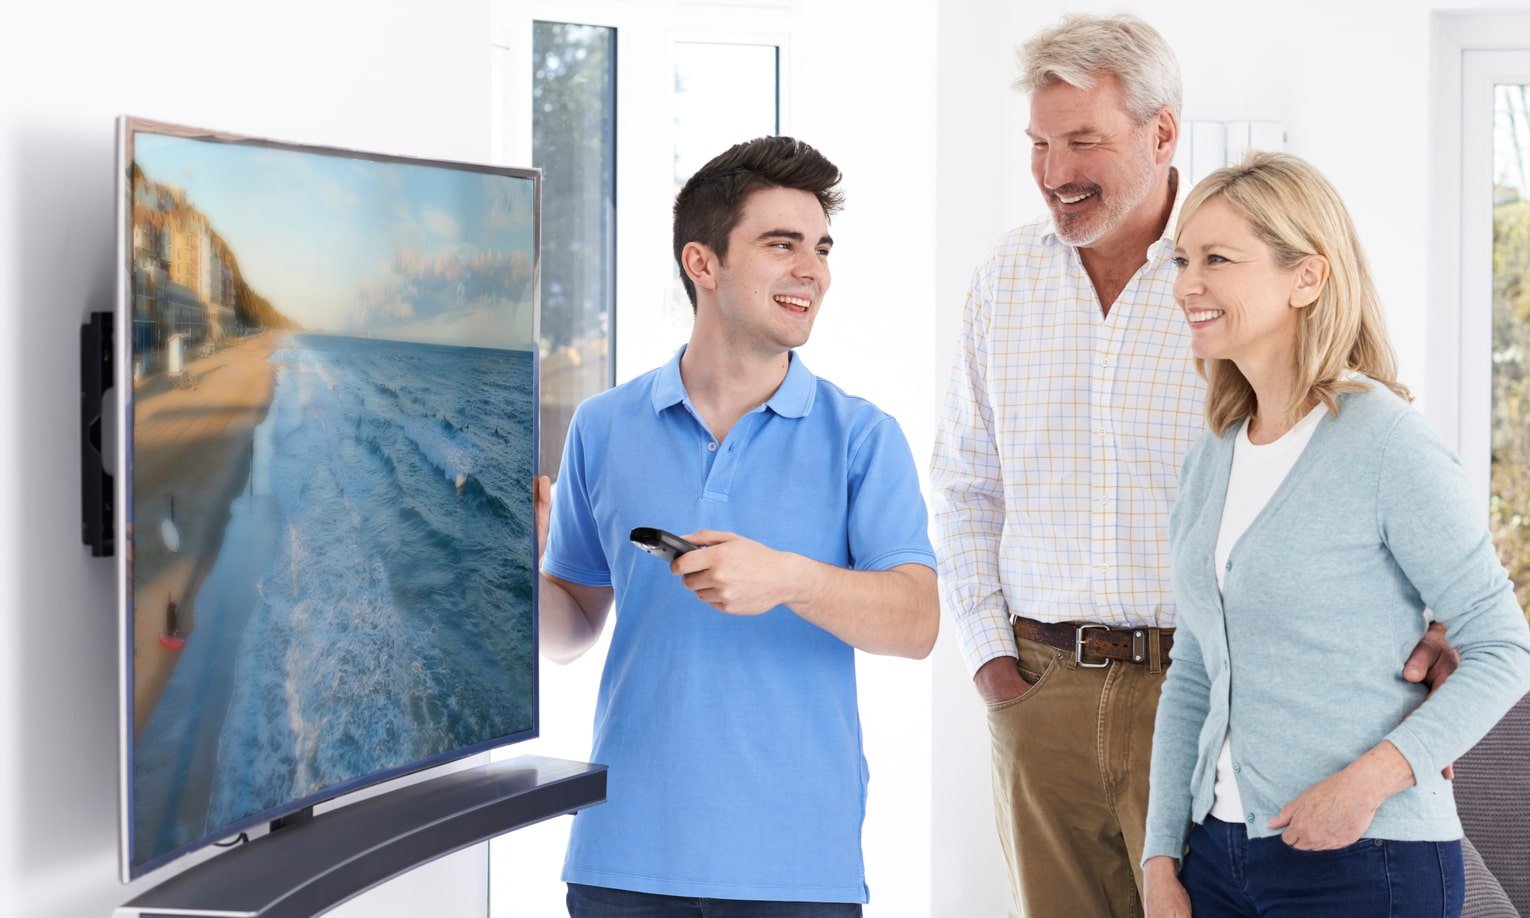 парень показывает телевизор с изогнутым экраном покупателям